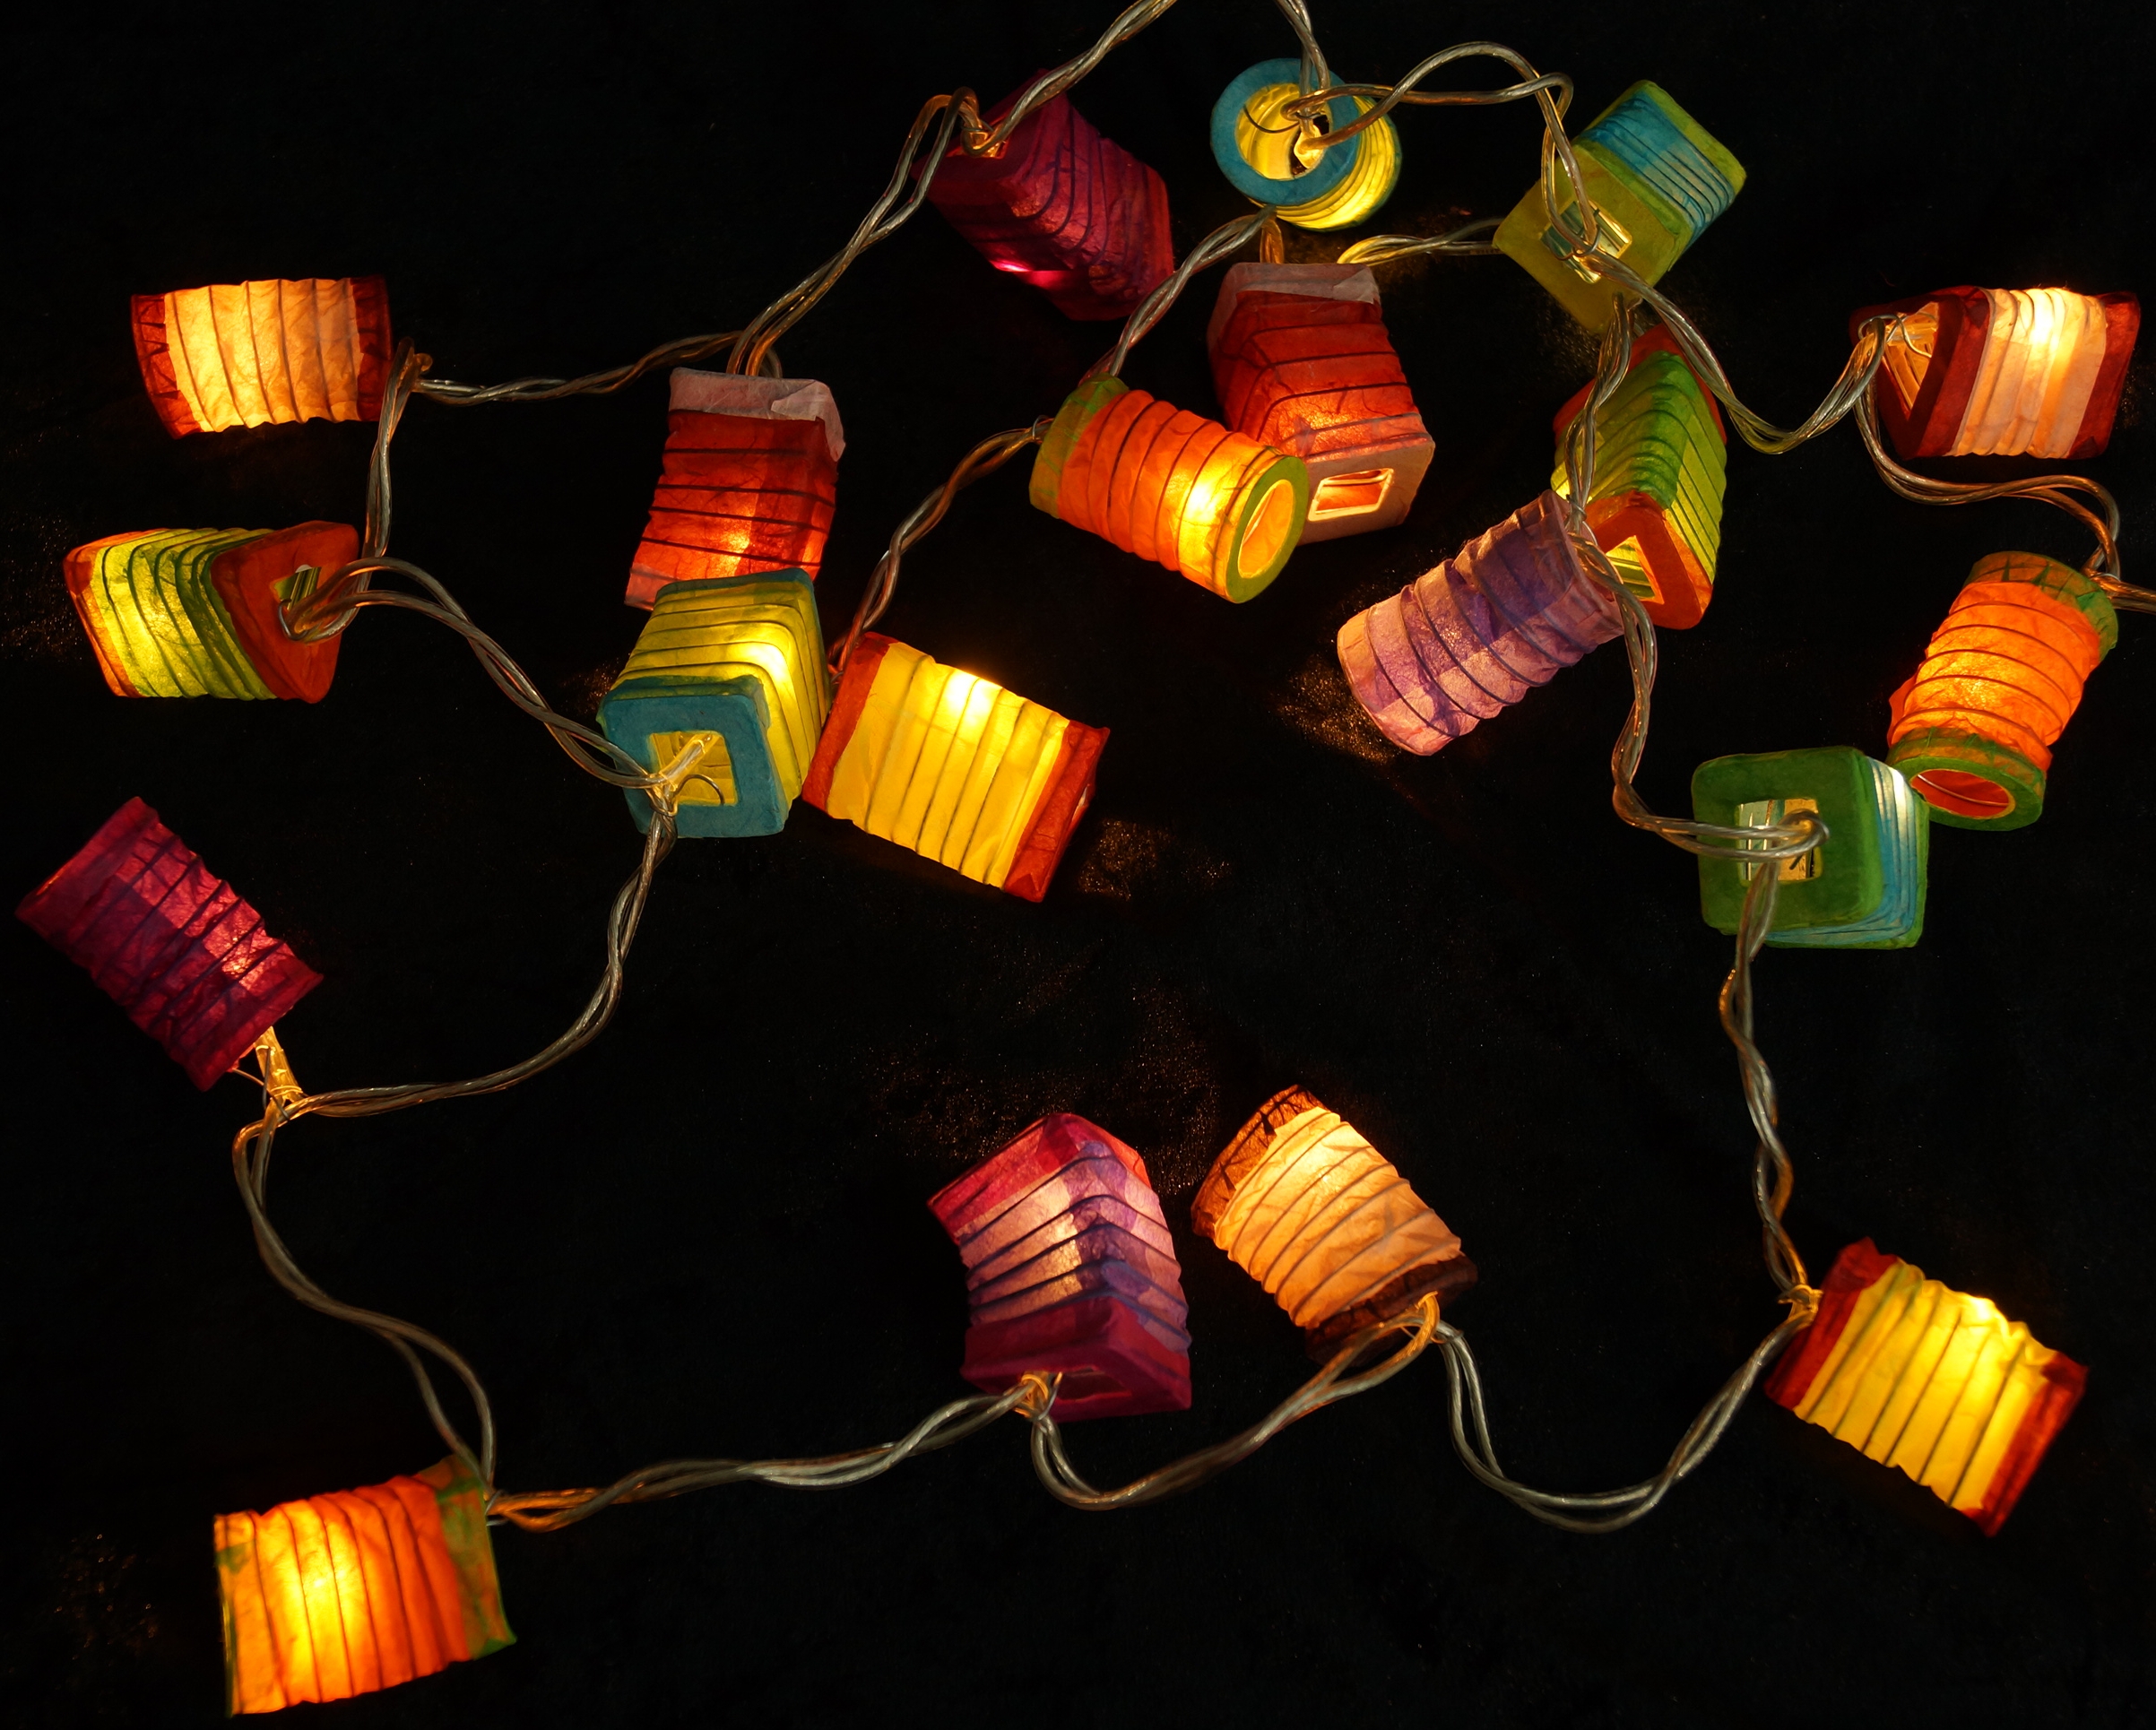 Erleuchte Dein Zuhause mit der bunten LED-Lichterkette Lampions-Mix von  Guru-Shop!